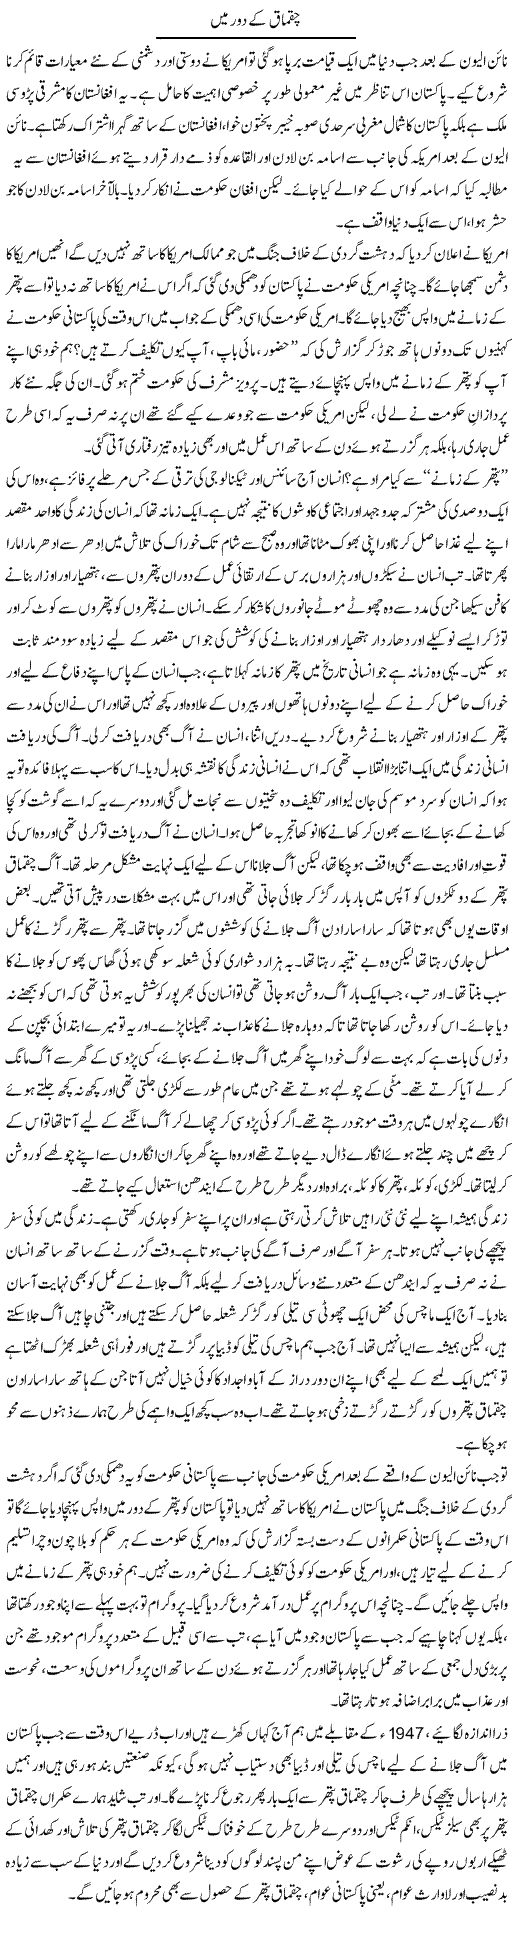 America and Pakistan Express Column Anwar Ahsan 6 January 2012